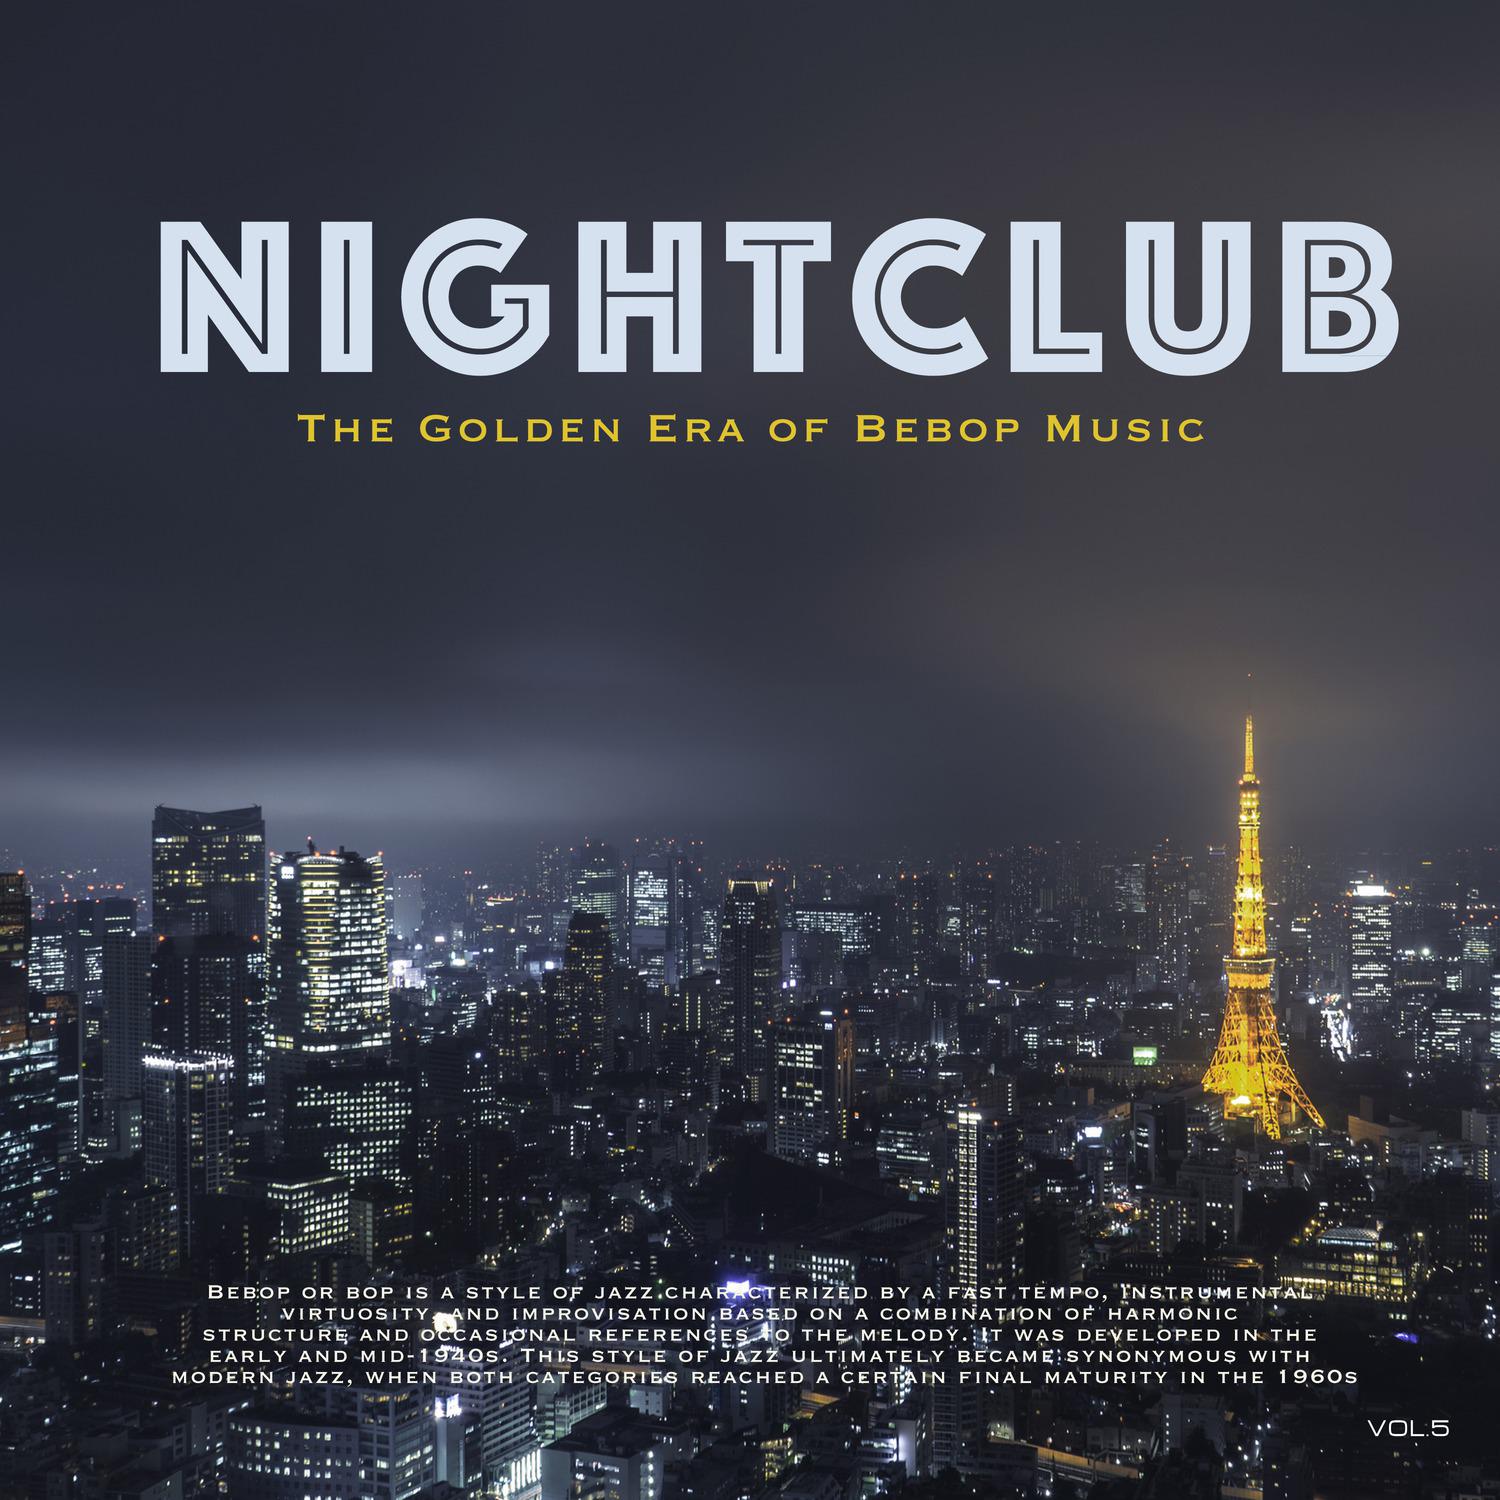 Nightclub, Vol. 5 (The Golden Era of Bebop Music)